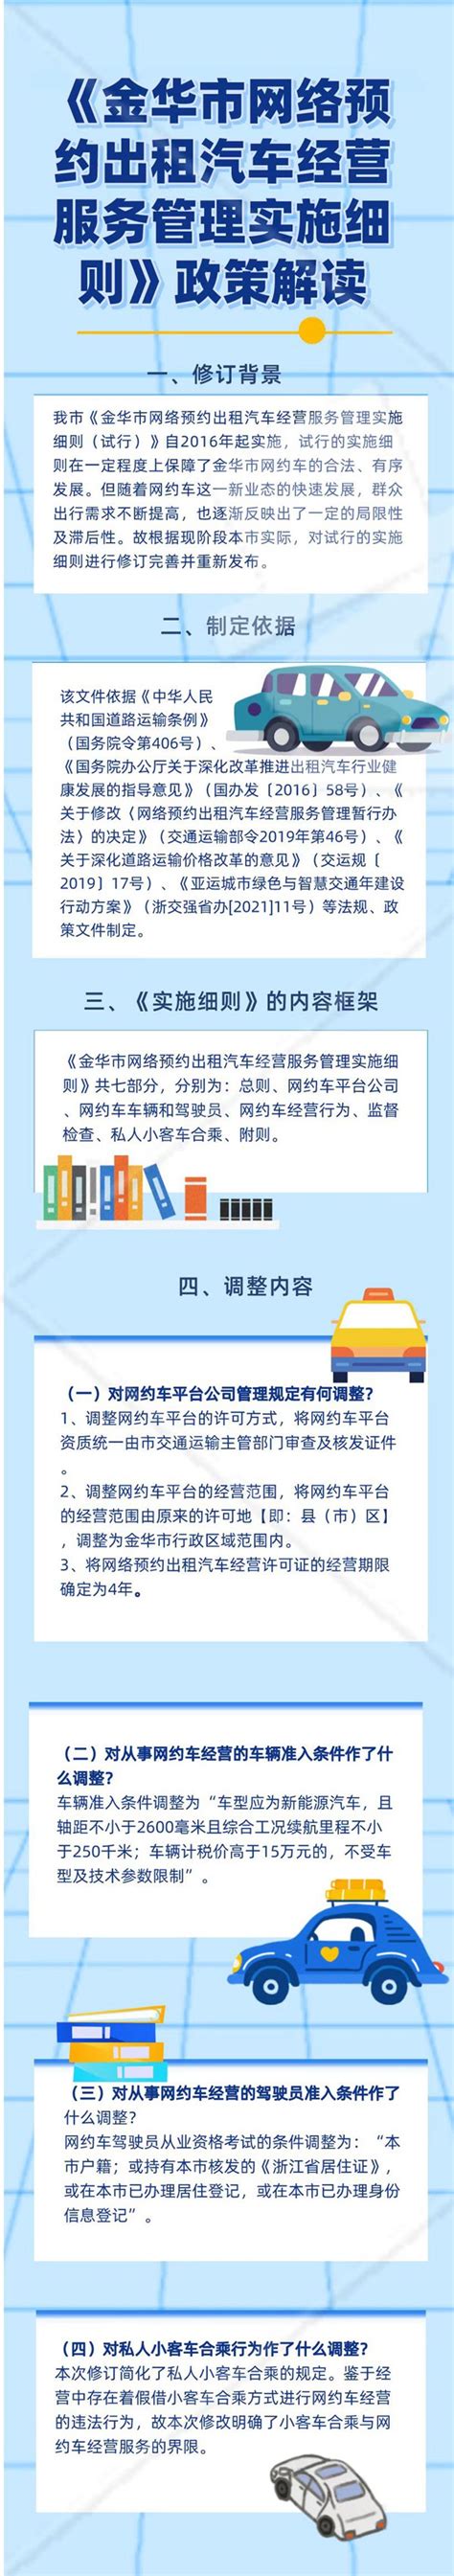 大庆市网络预约出租汽车经营服务管理实施细则